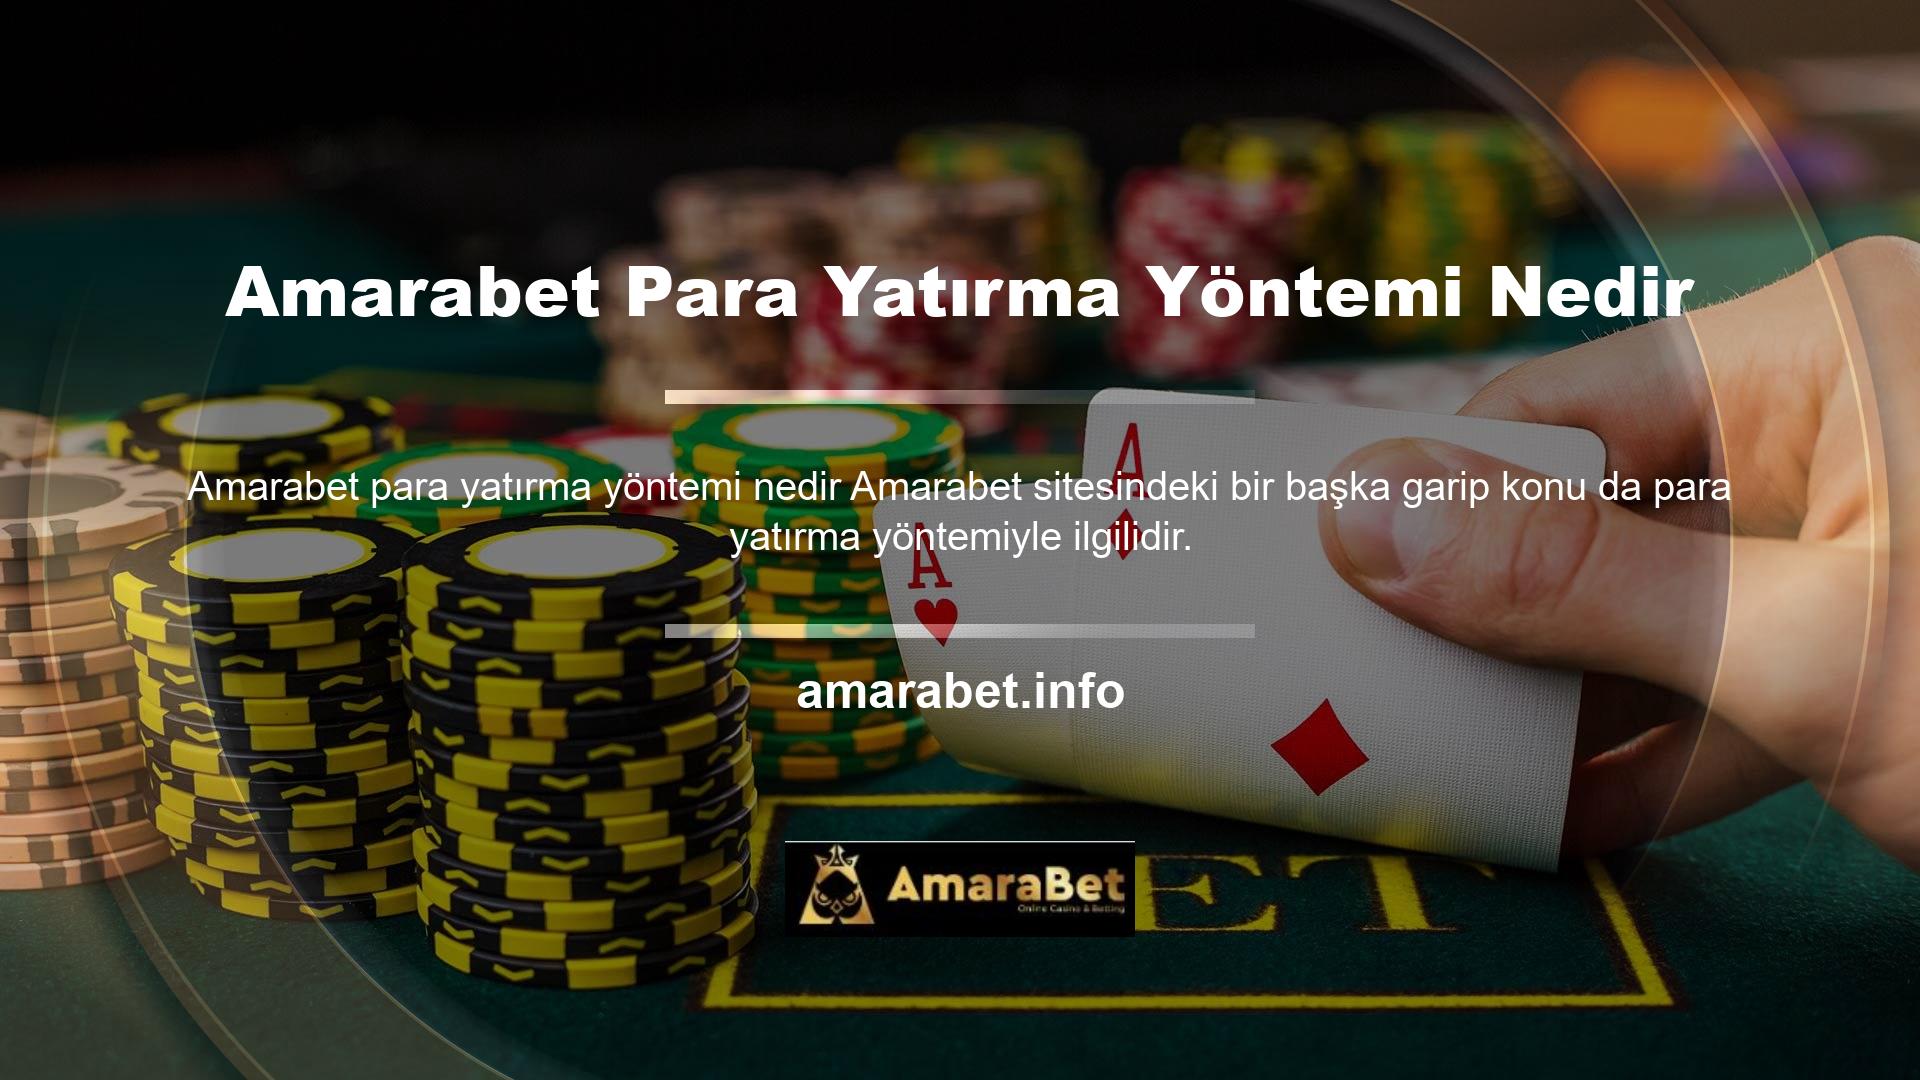 Amarabet para yatırma yöntemleri, casino tutkunlarına para yatırmak için kolay bir para yatırma yöntemi sağlamak amacıyla teknolojiyi ve çeşitli ilkeleri kullanır